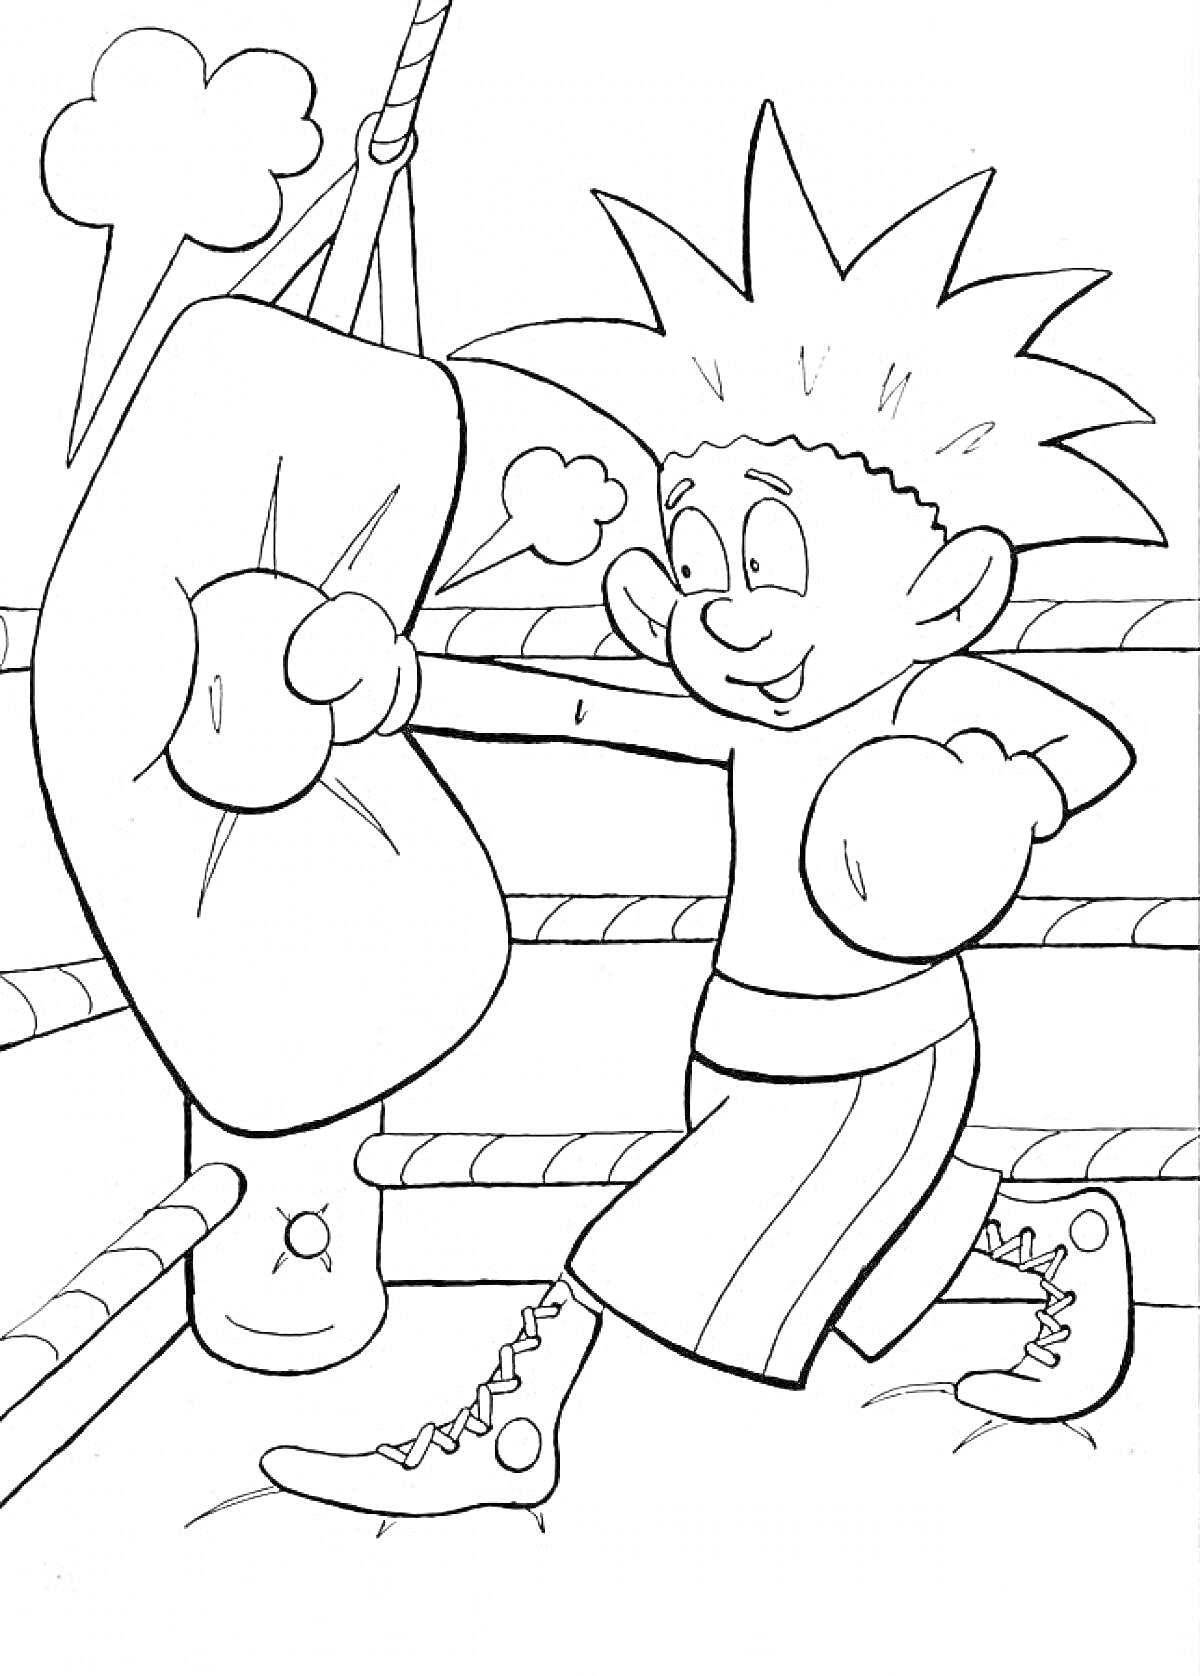 Мальчик в боксерских перчатках на ринге бьет по боксерской груше